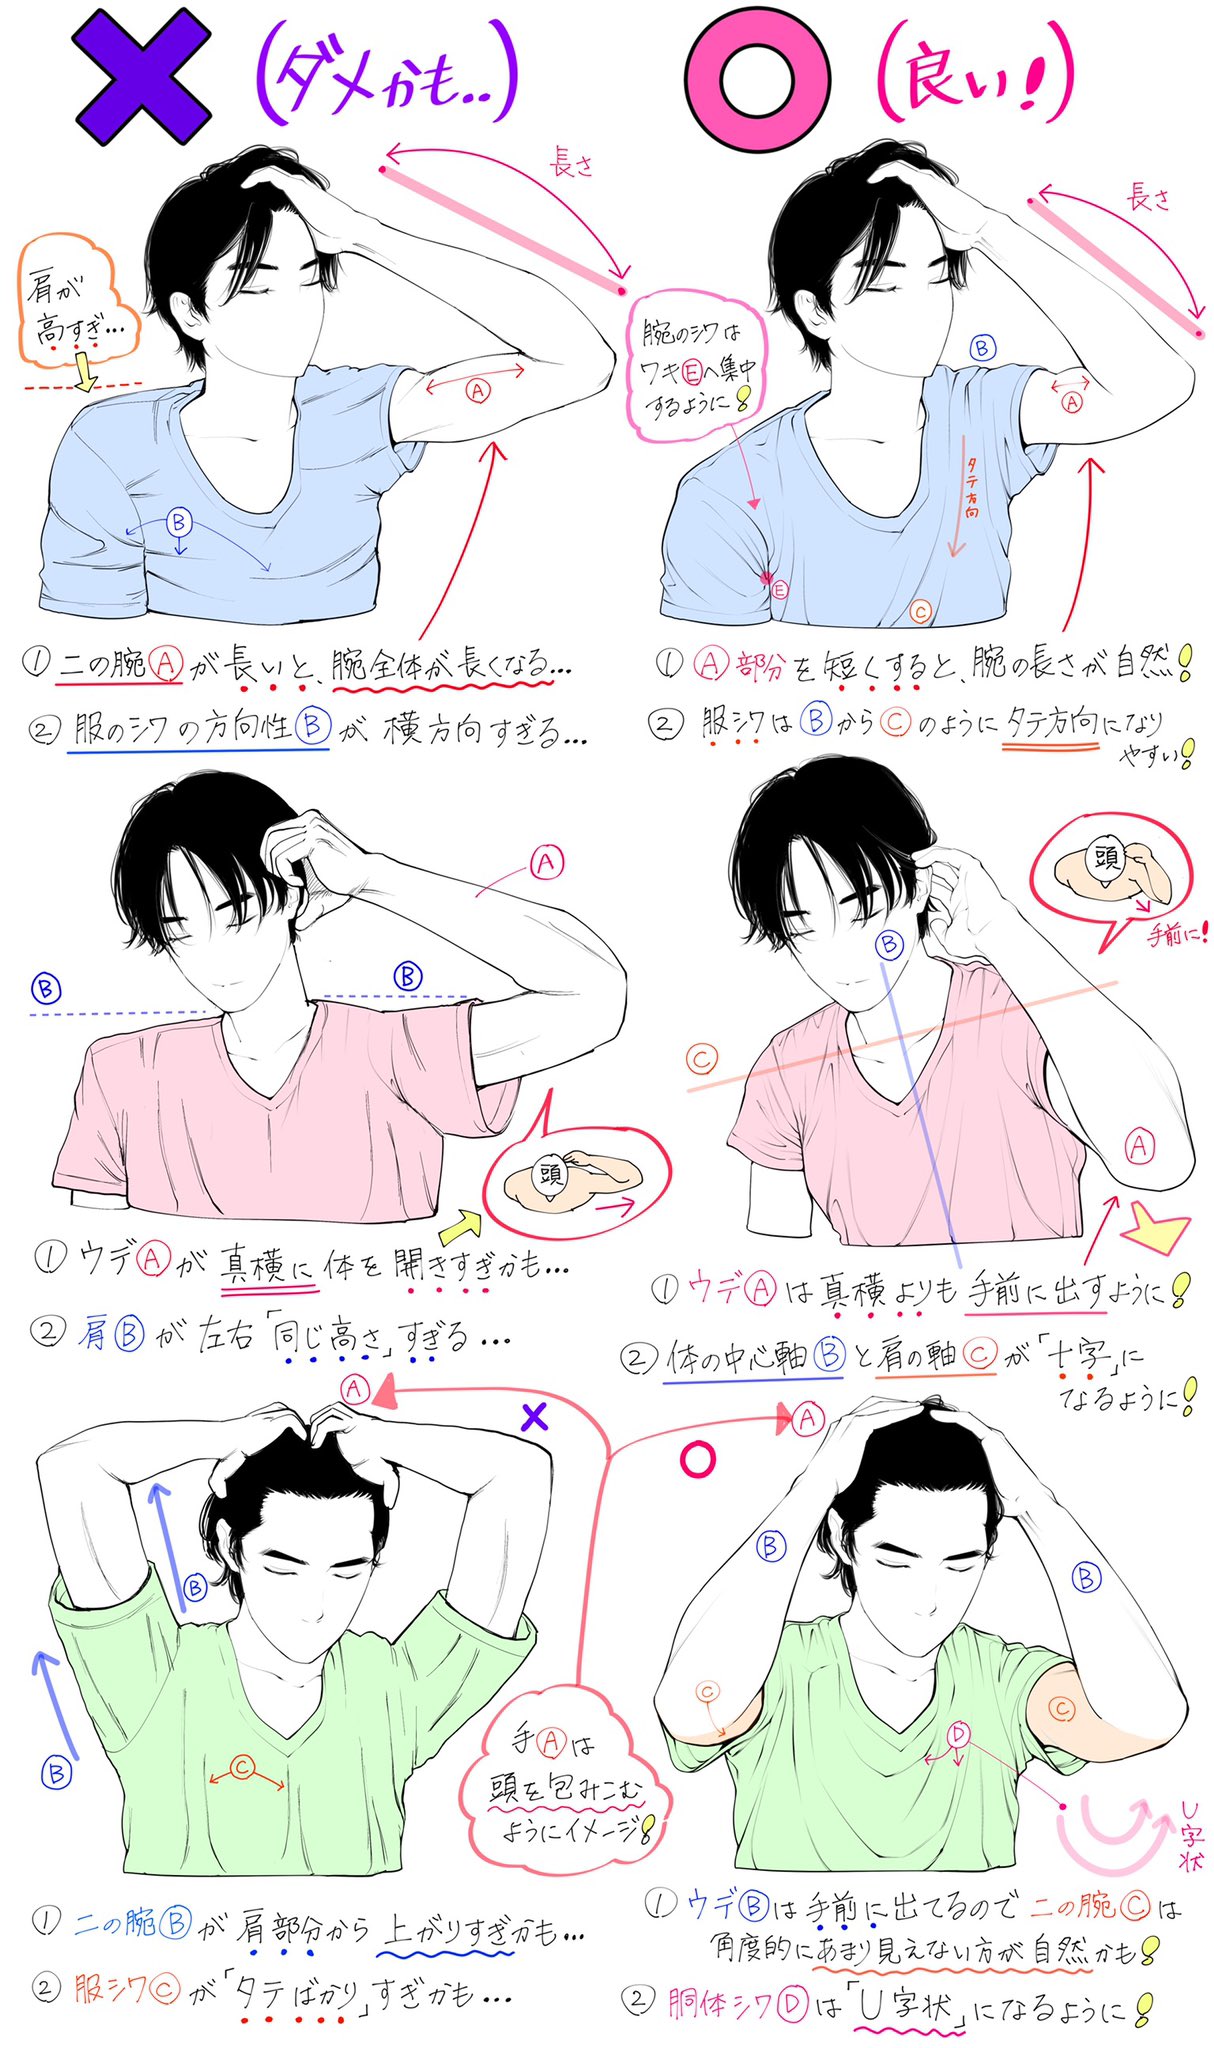 吉村拓也 イラスト講座 髪かきあげるポーズの描き方 かきあげる腕と体の向き が上達するための ダメなこと と 良いこと 全12パターンの比較解説です T Co Flmdjtrrc2 Twitter